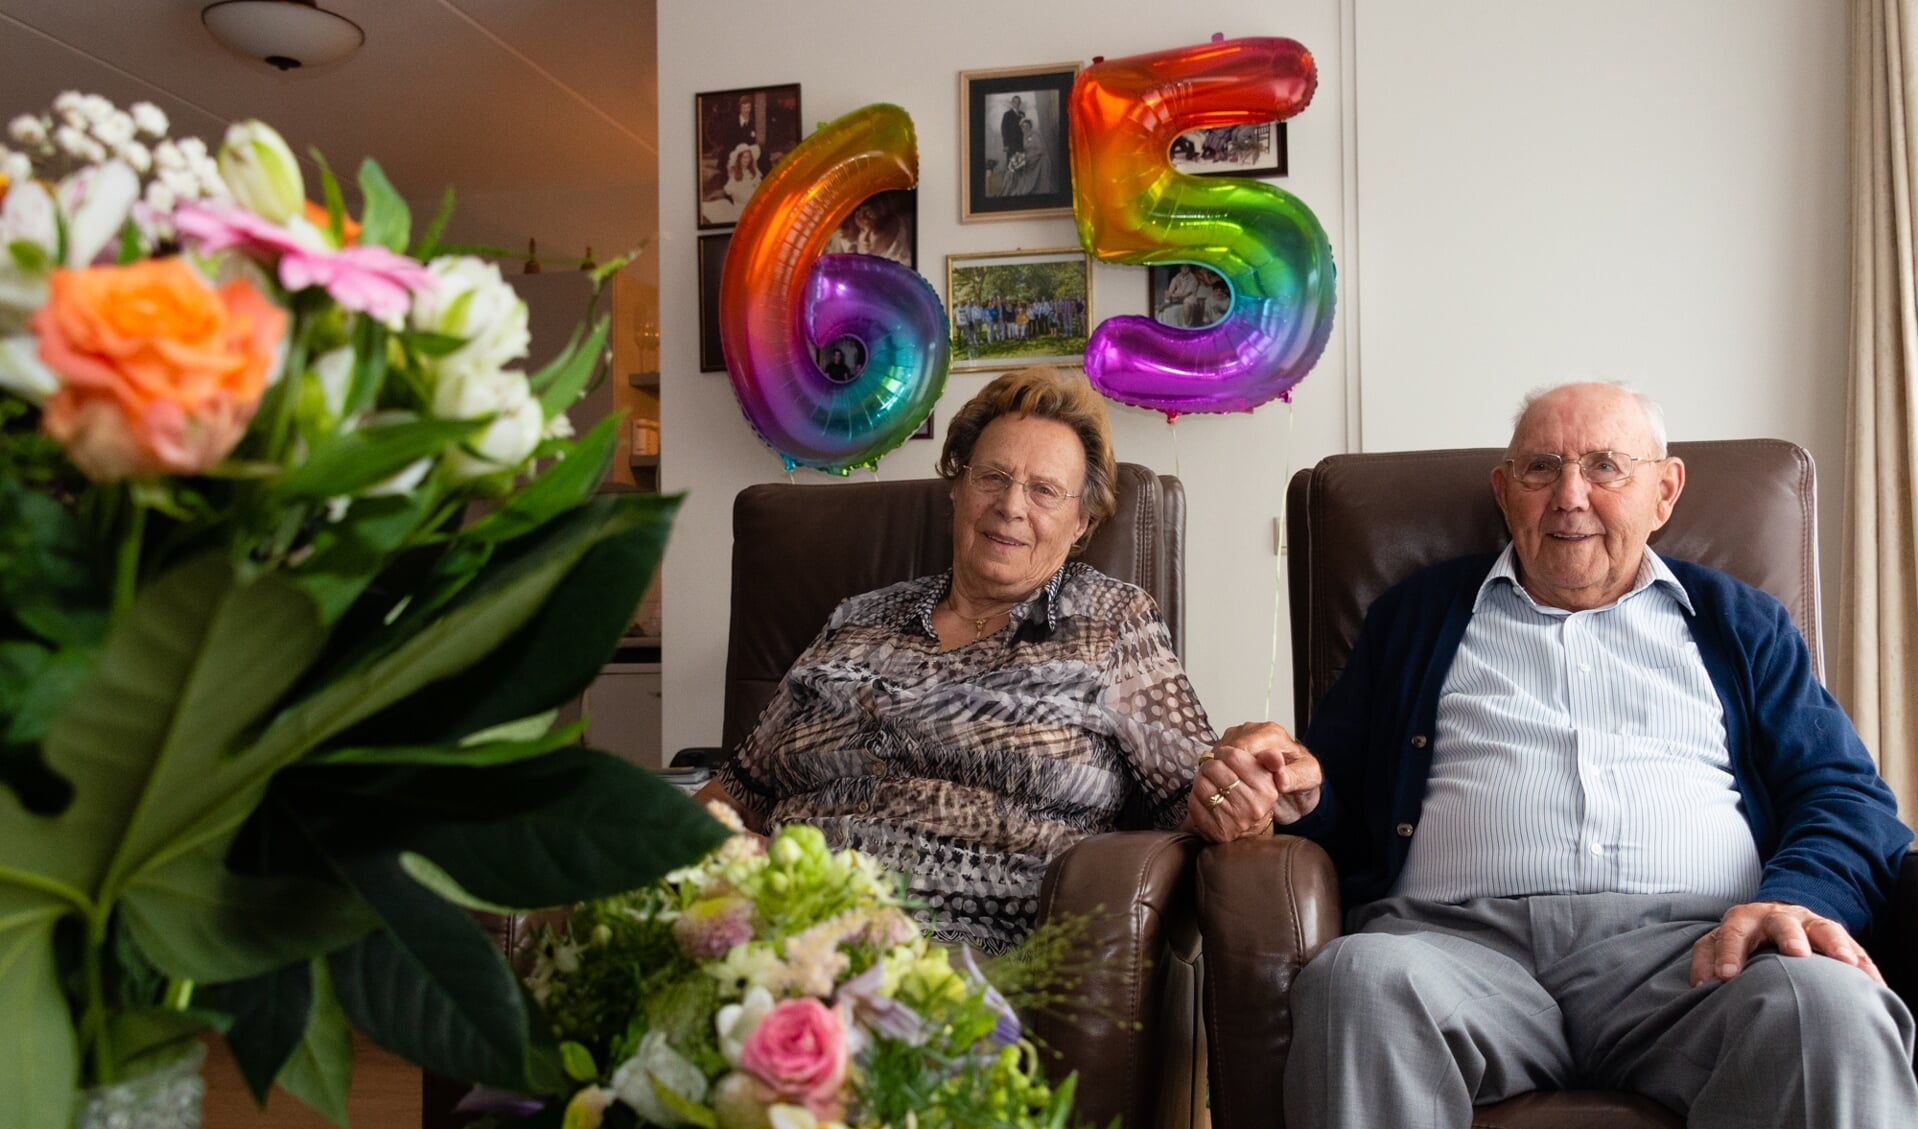 Dertig jaar lang heeft het echtpaar de Schijfse Boerenbond gerund. 